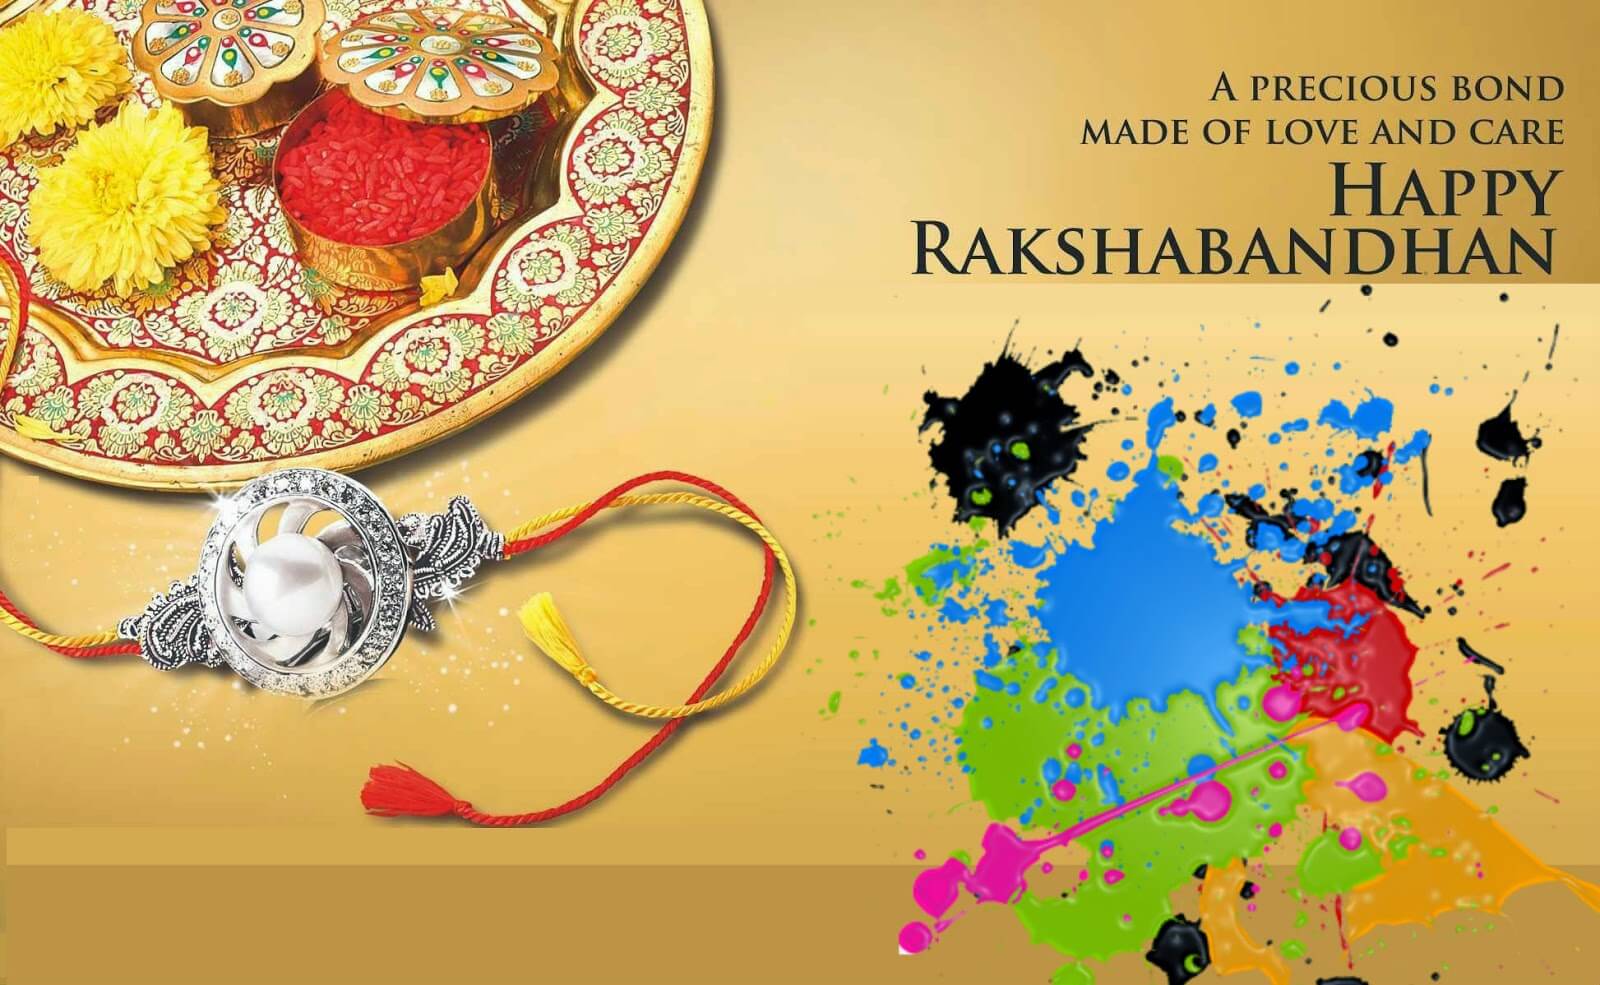 happy Raksha Bandhan wishes images wallpapers in english